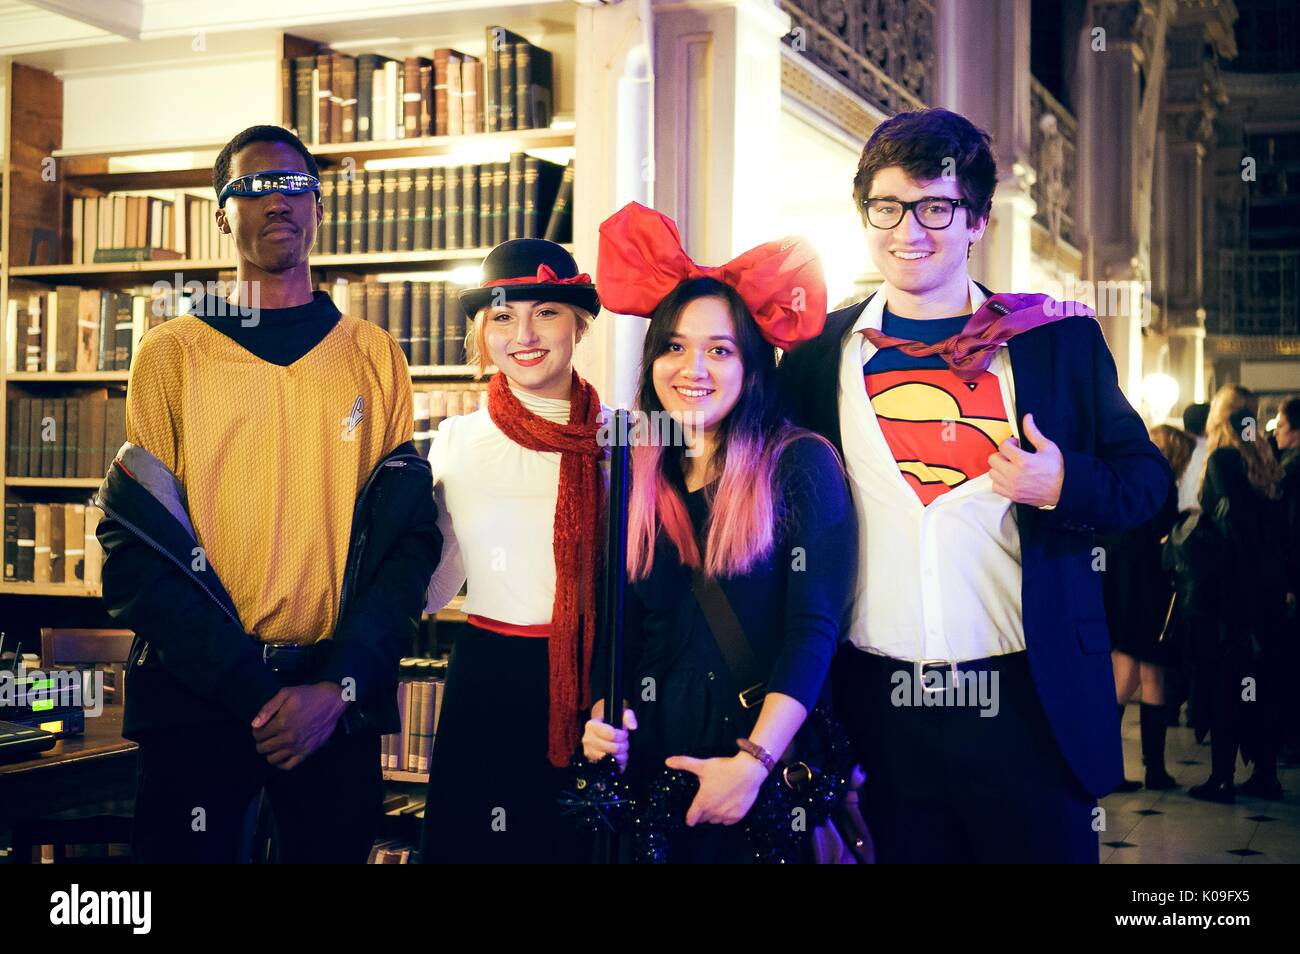 Cuatro estudiantes universitarios están en traje y están planteando, el muchacho en el extremo derecho está vestido como Superman y la chica junto a él está vistiendo un gran lazo rojo en su cabeza, el niño en el extremo izquierdo está usando gafas de sol y la chica junto a él está vestido como Mary Poppins, 2015. Cortesía de Eric Chen. Foto de stock